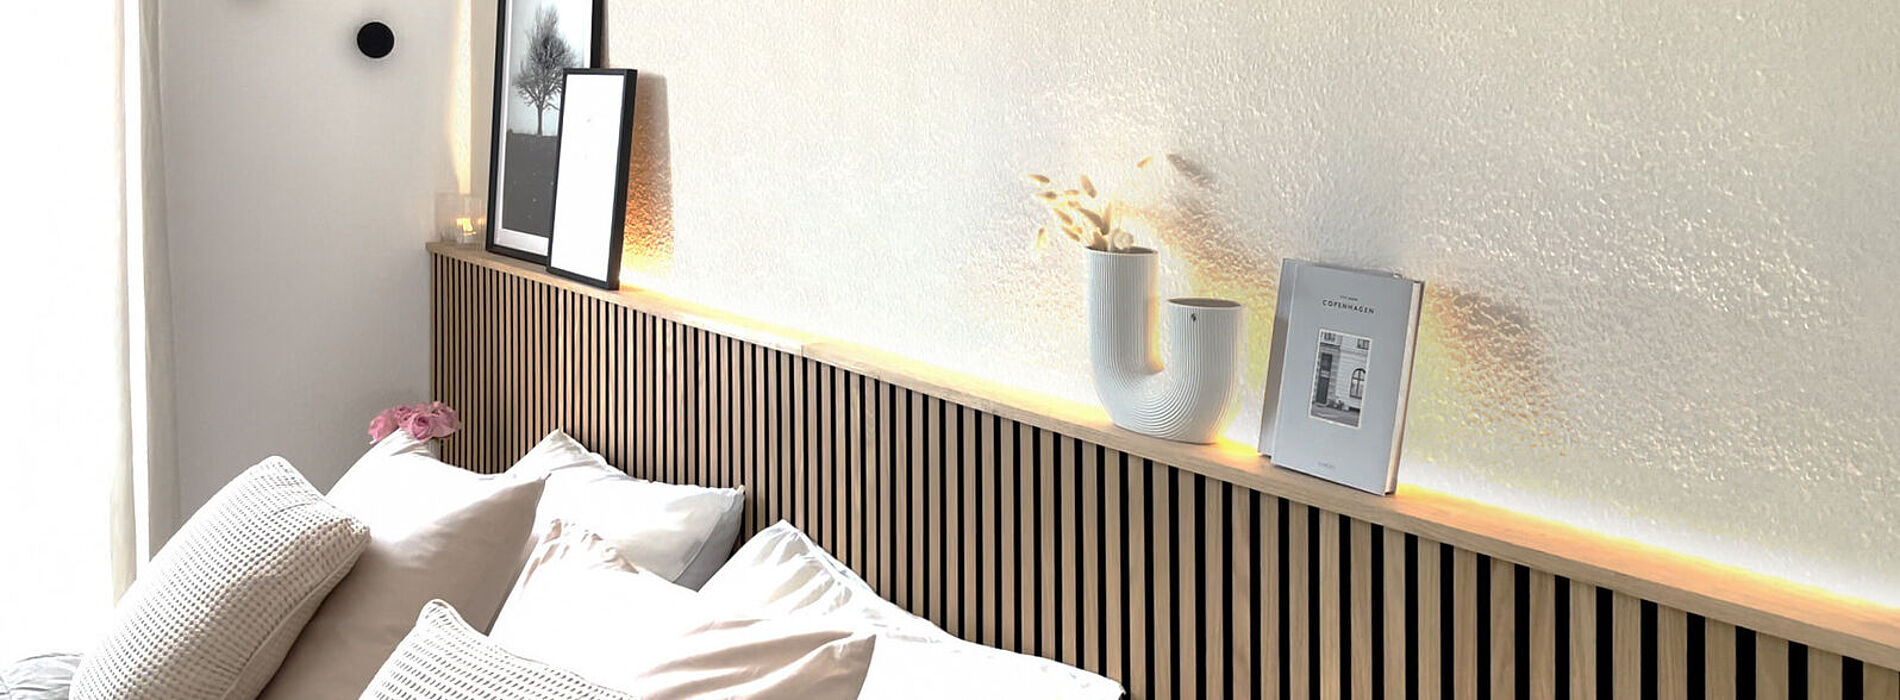 WAGNER Schlafzimmer-Wandgestaltung mit Paneelen & Farbe Ergebnis